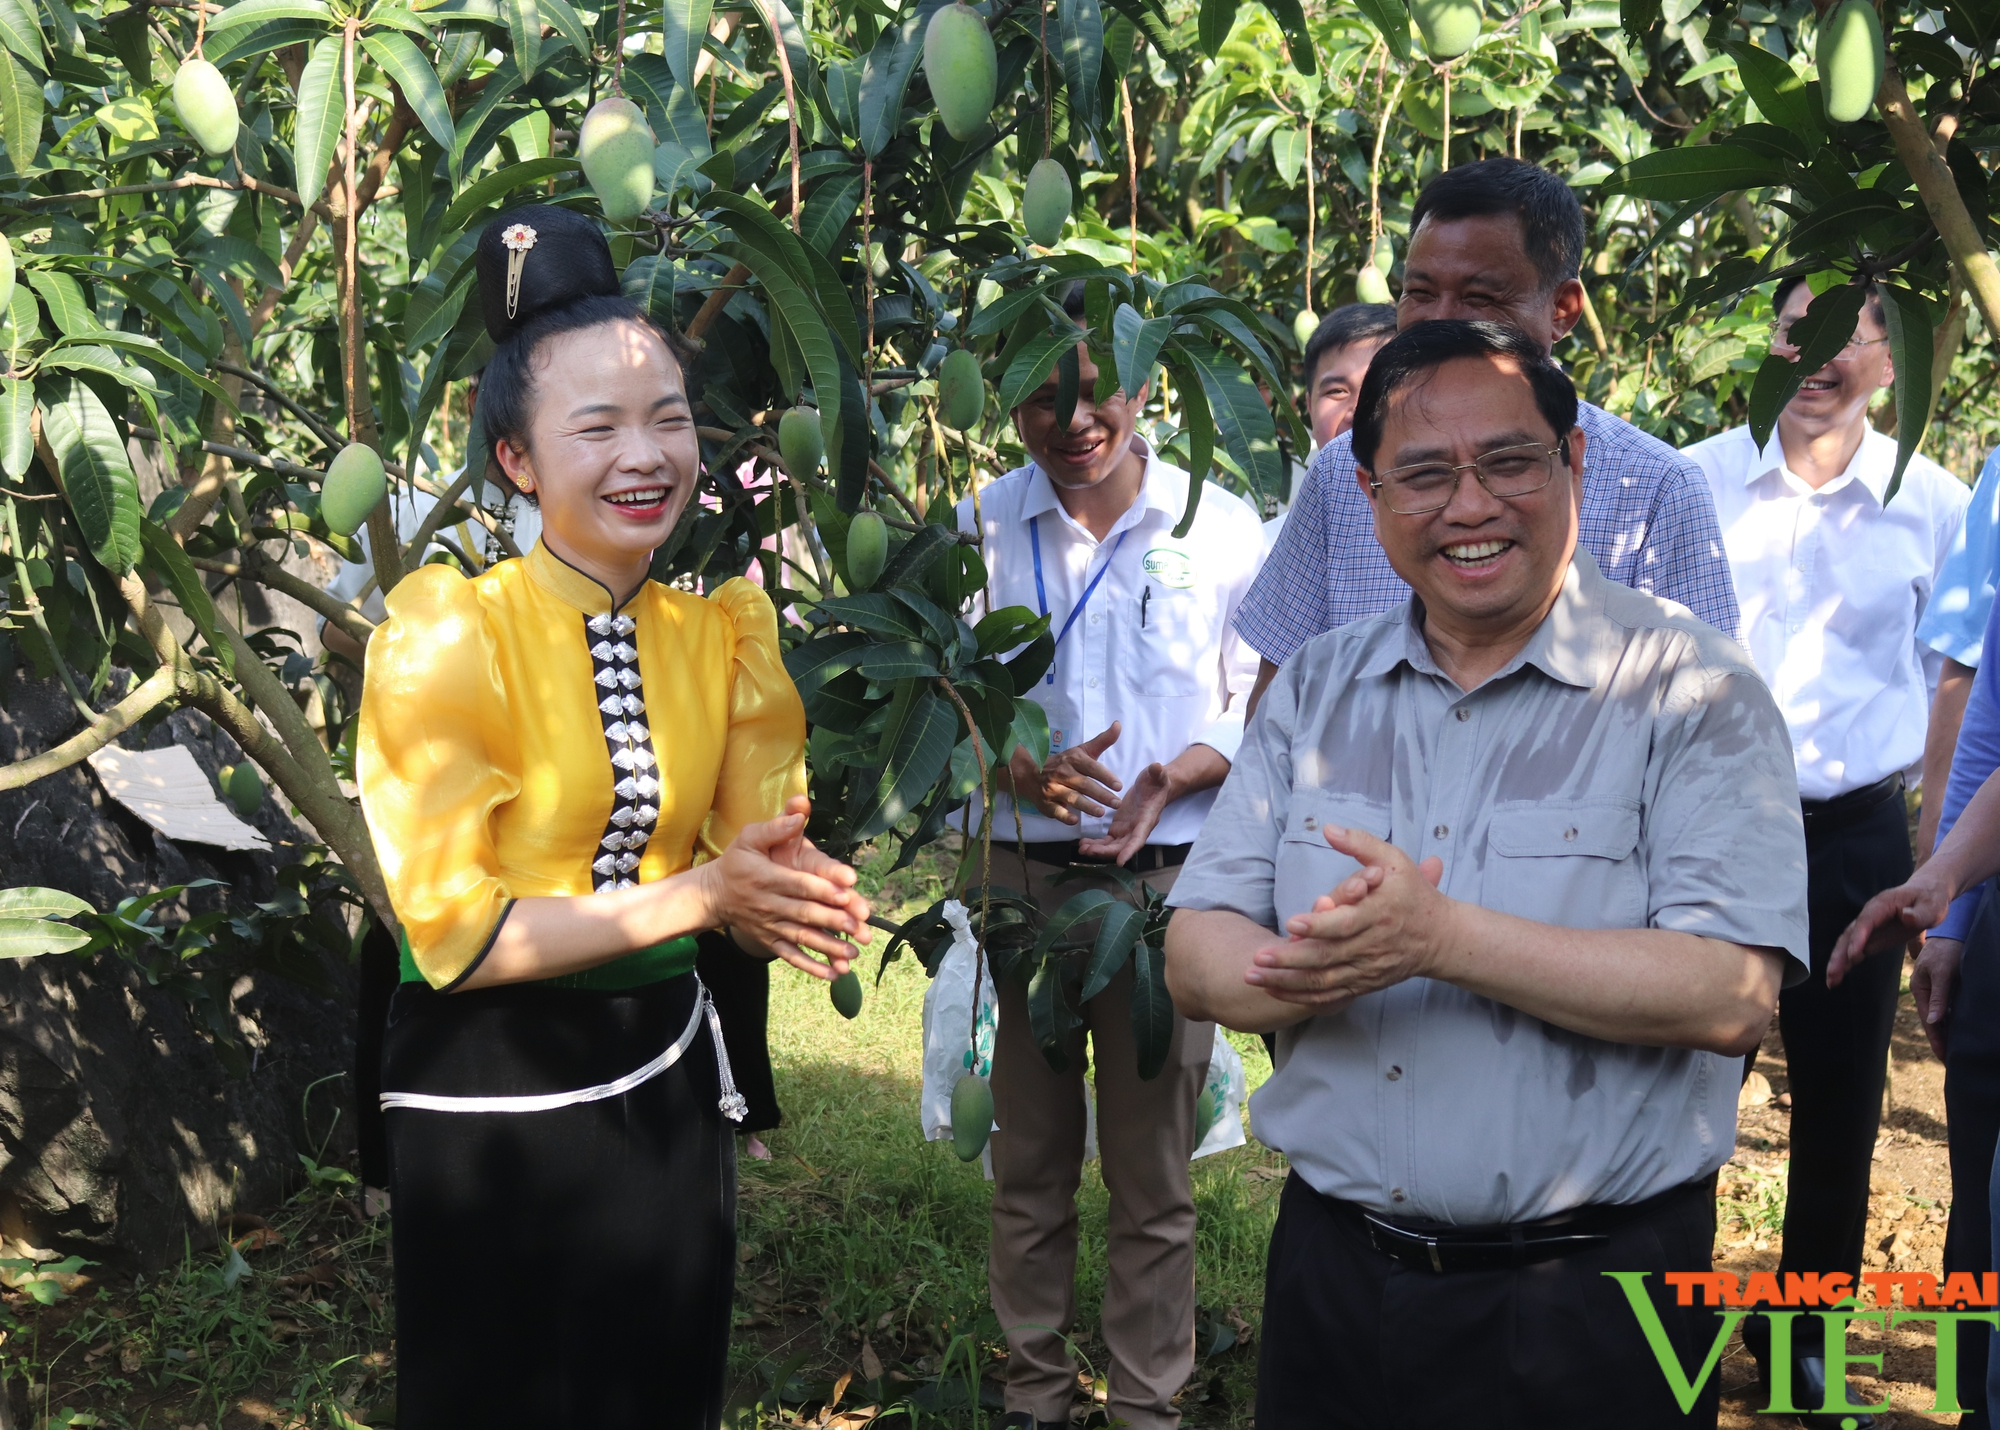 Thủ tướng Phạm Minh Chính chỉ ra 6 vấn đề cần hỗ trợ nông dân trong sản xuất nông nghiệp ở Sơn La - Ảnh 3.